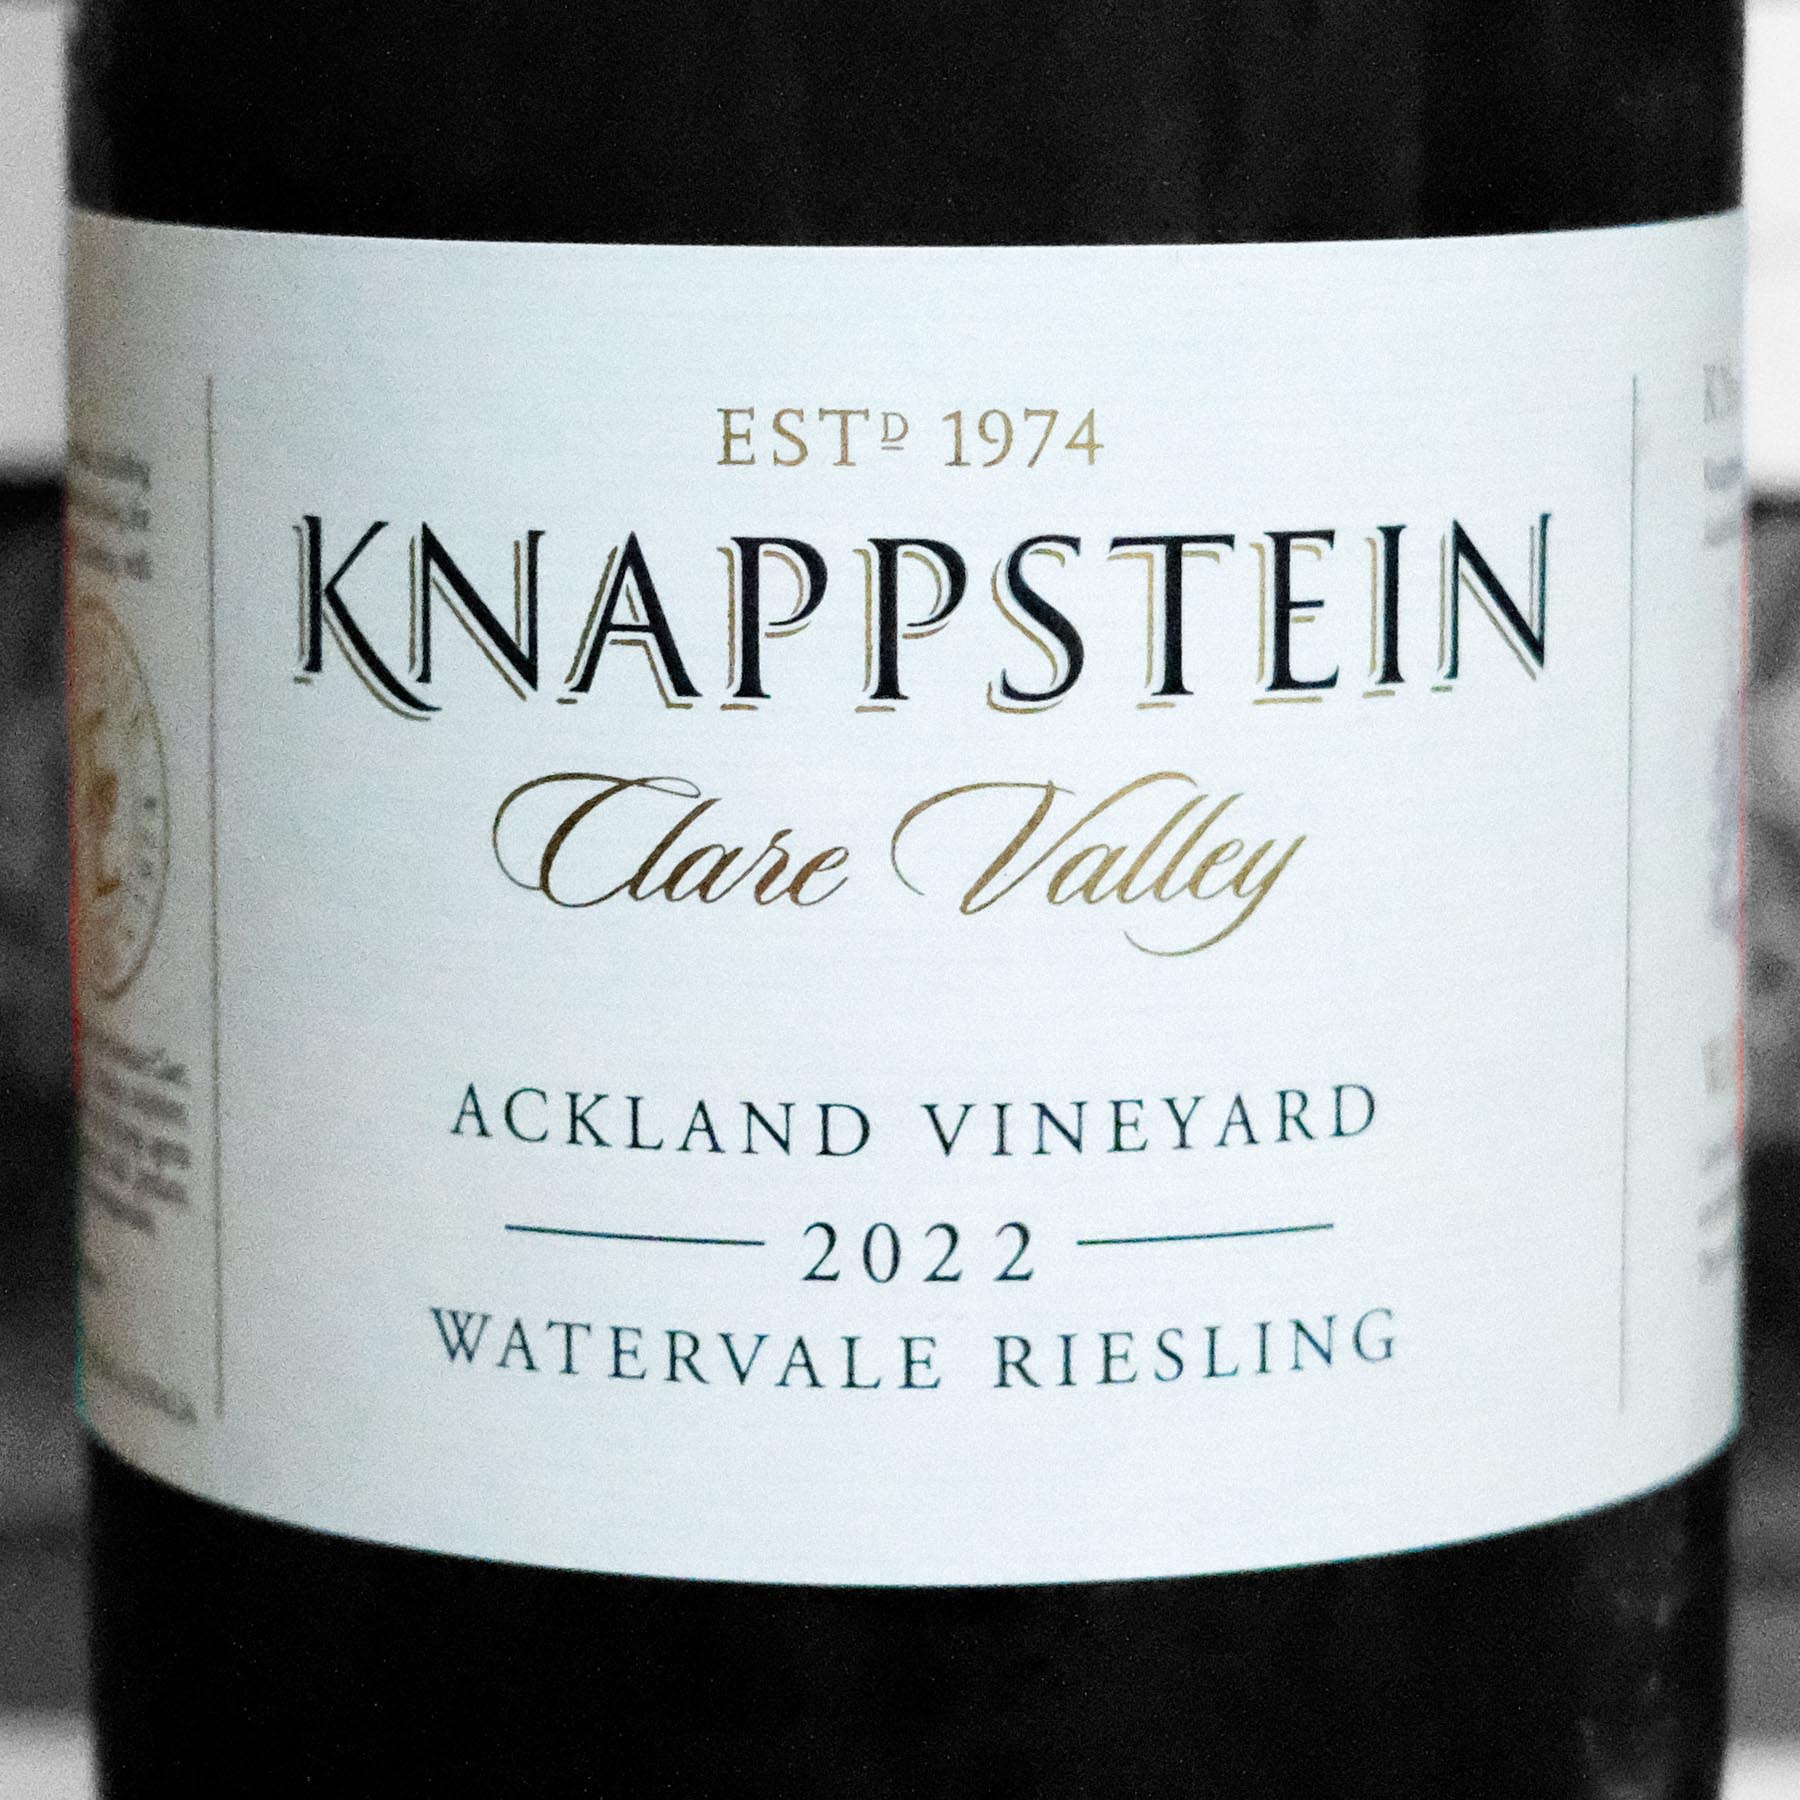 Knappstein Enterprise Winery Ackland Vineyard Watervale Riesling 2022